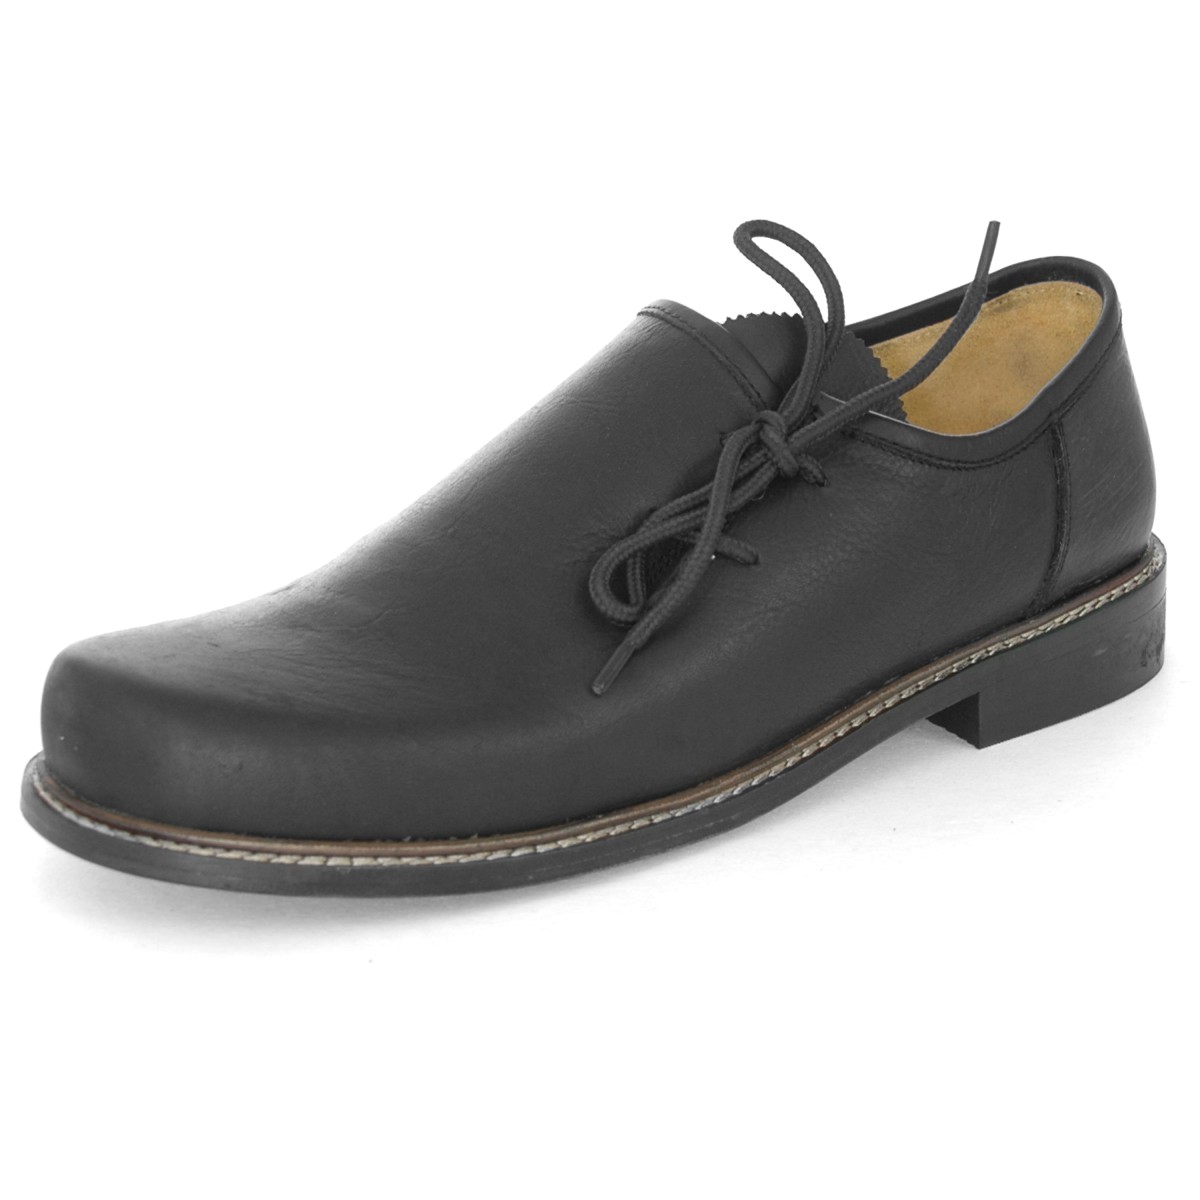 Shoes Men’s Trachten Haferlschuh Black with Leather Sole – Trachten-Quelle